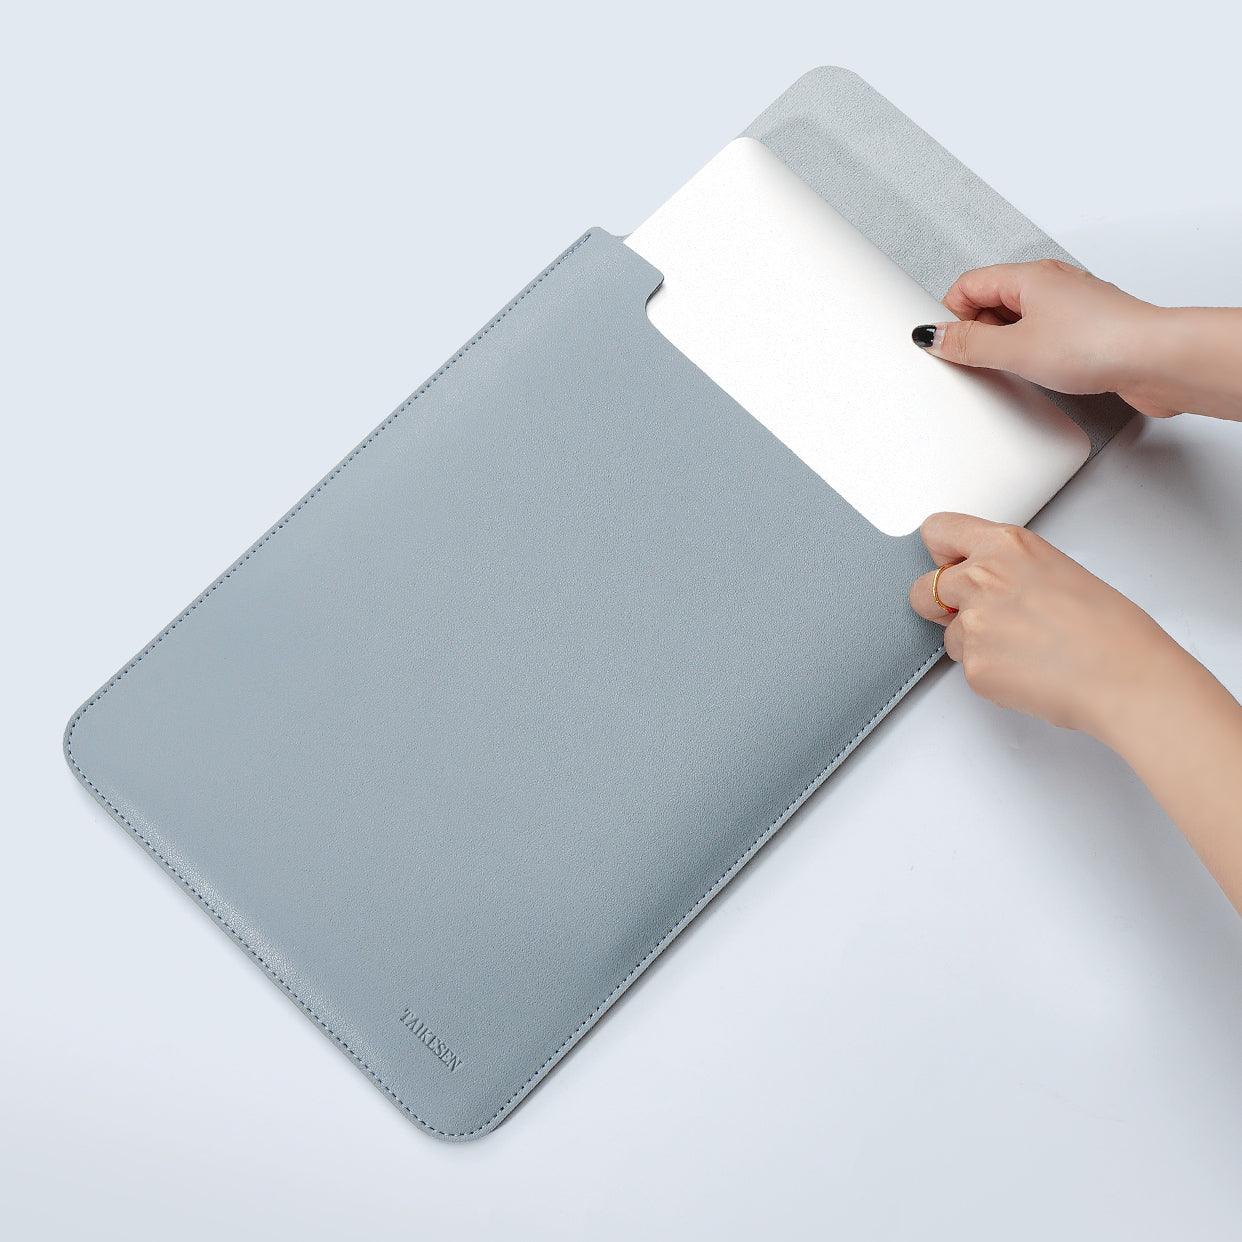 Waterproof Laptop Bag Sleeve Cover- 11/12/13.3/14/15/15.6-inch